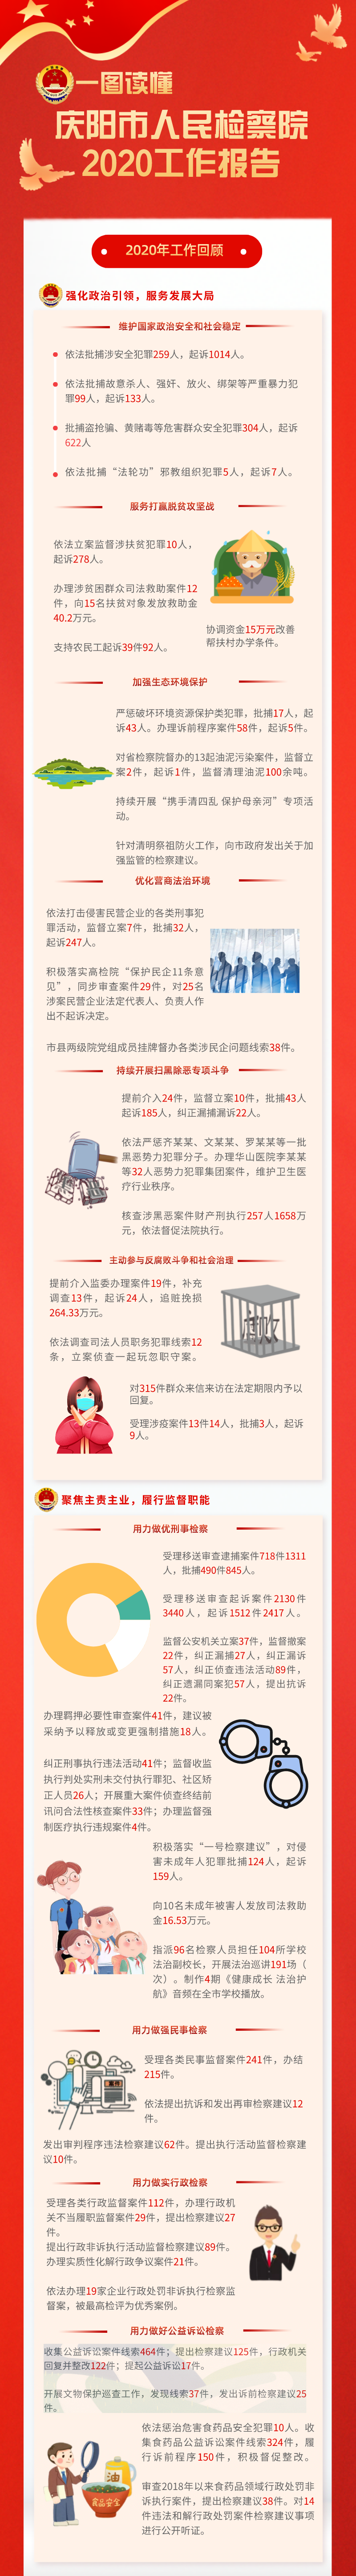 一图读懂2020年庆阳市人民检察院工作报告